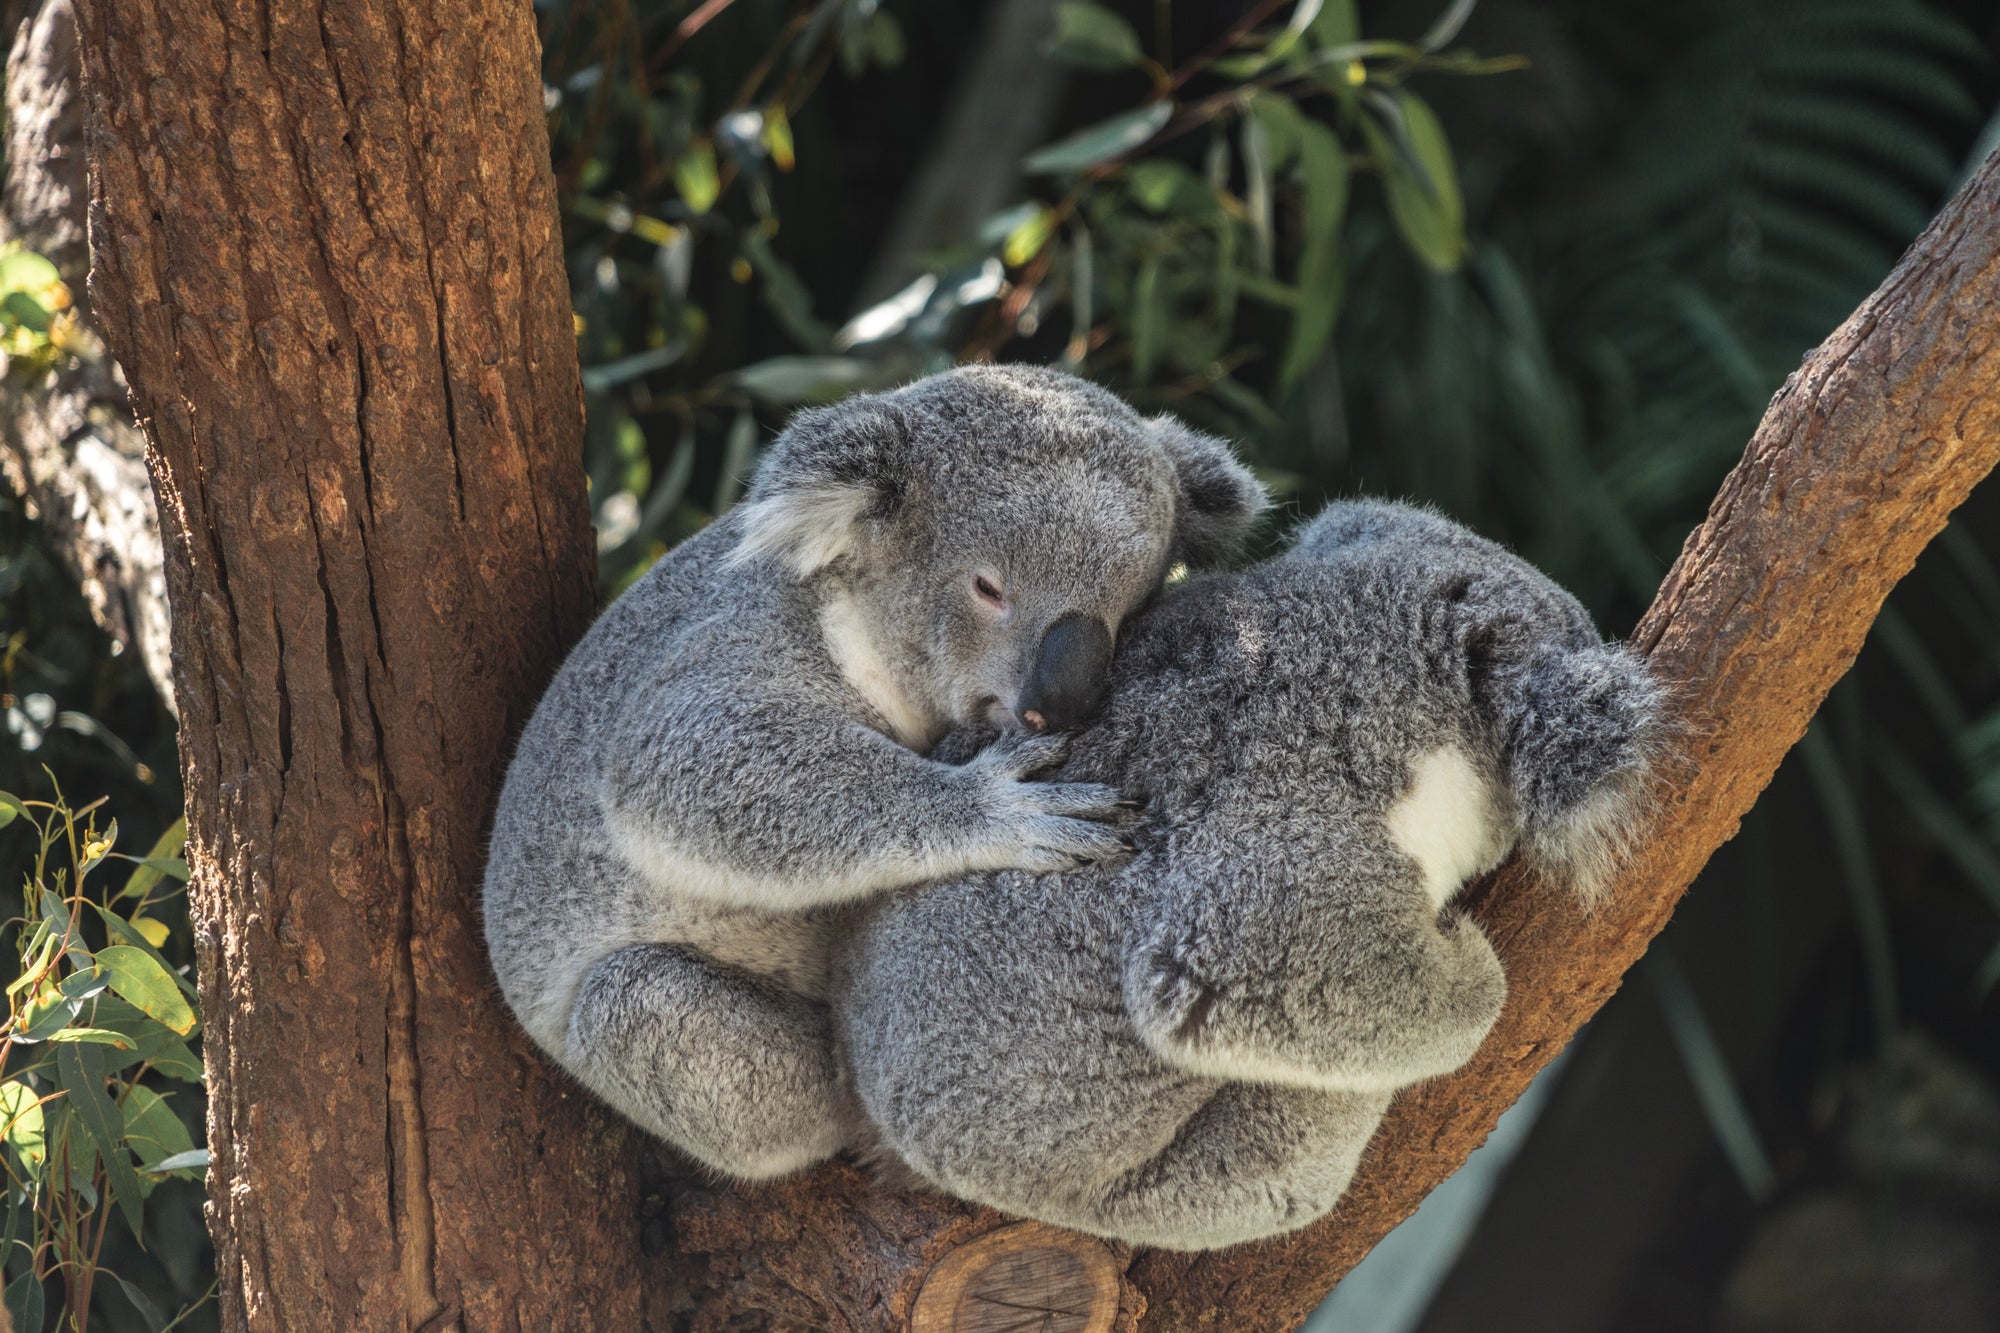 two koalas in a tree